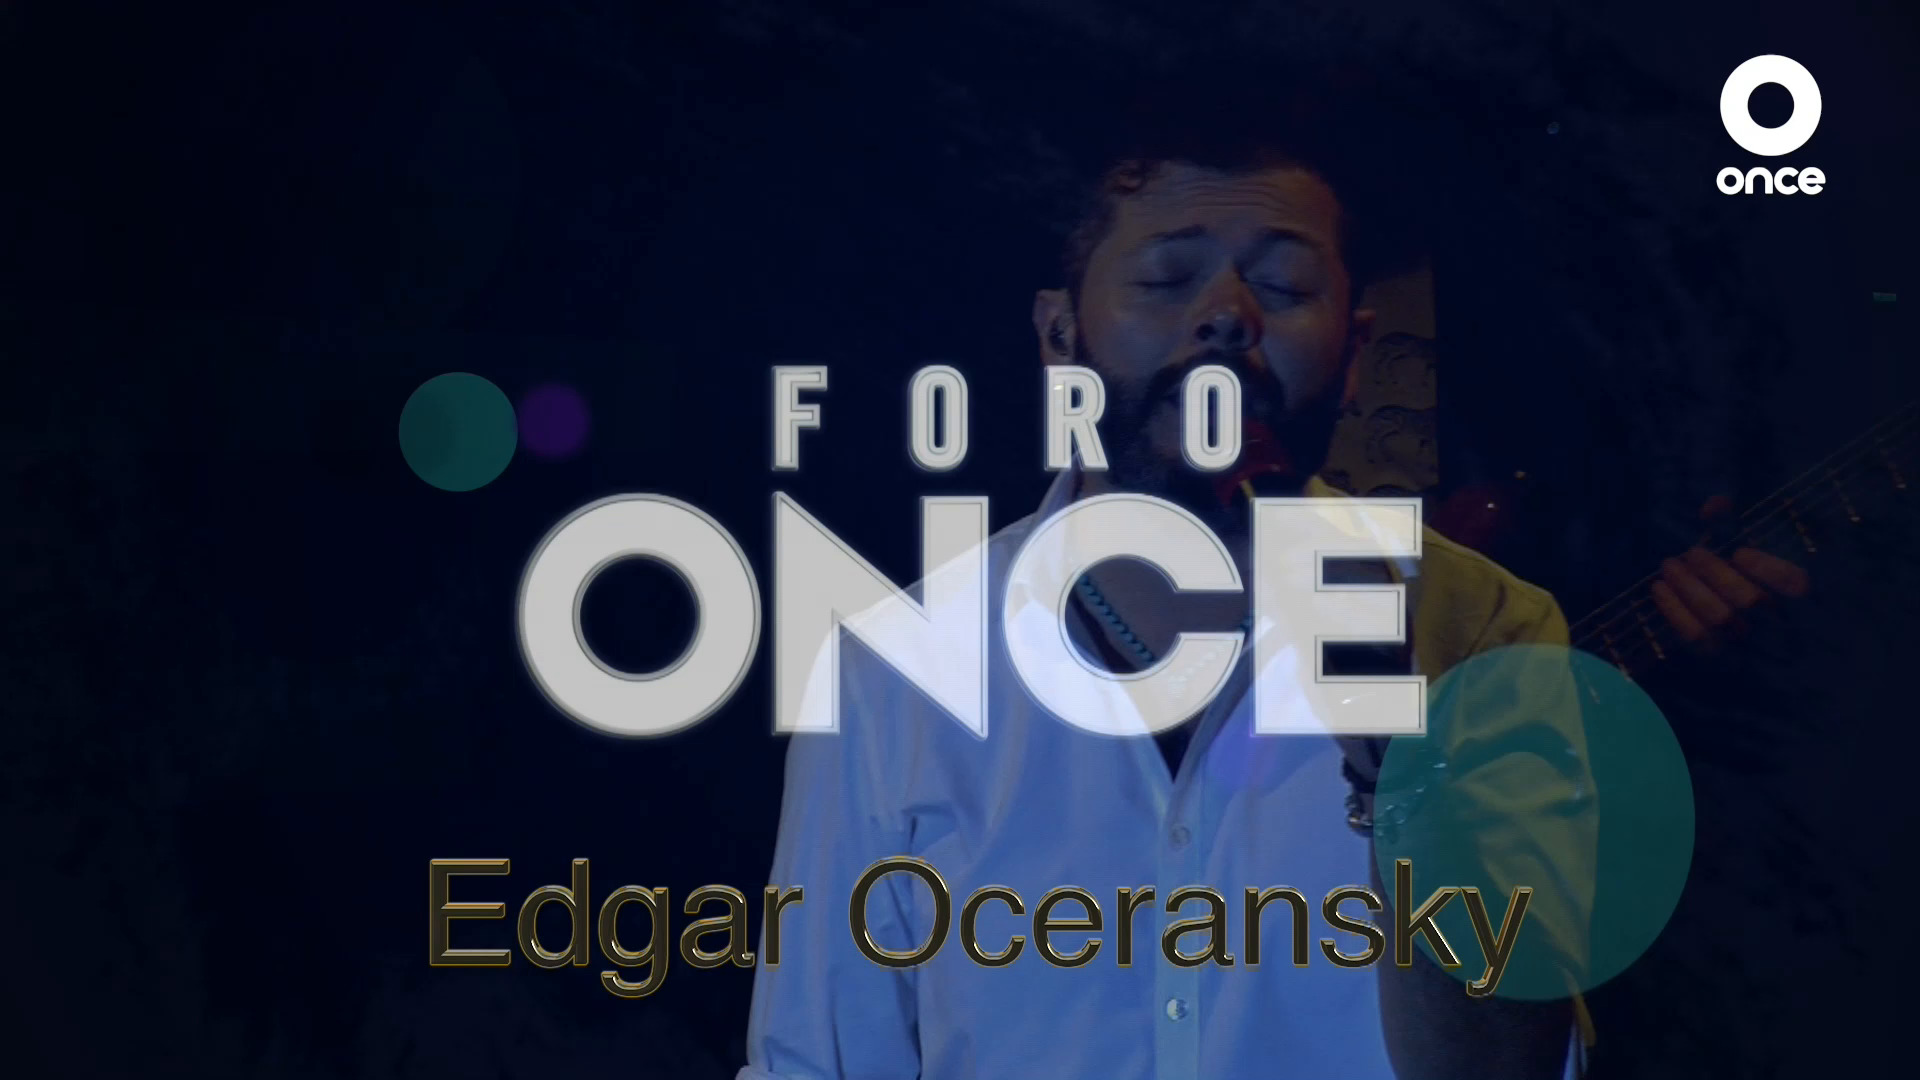 Edgar Oceransky